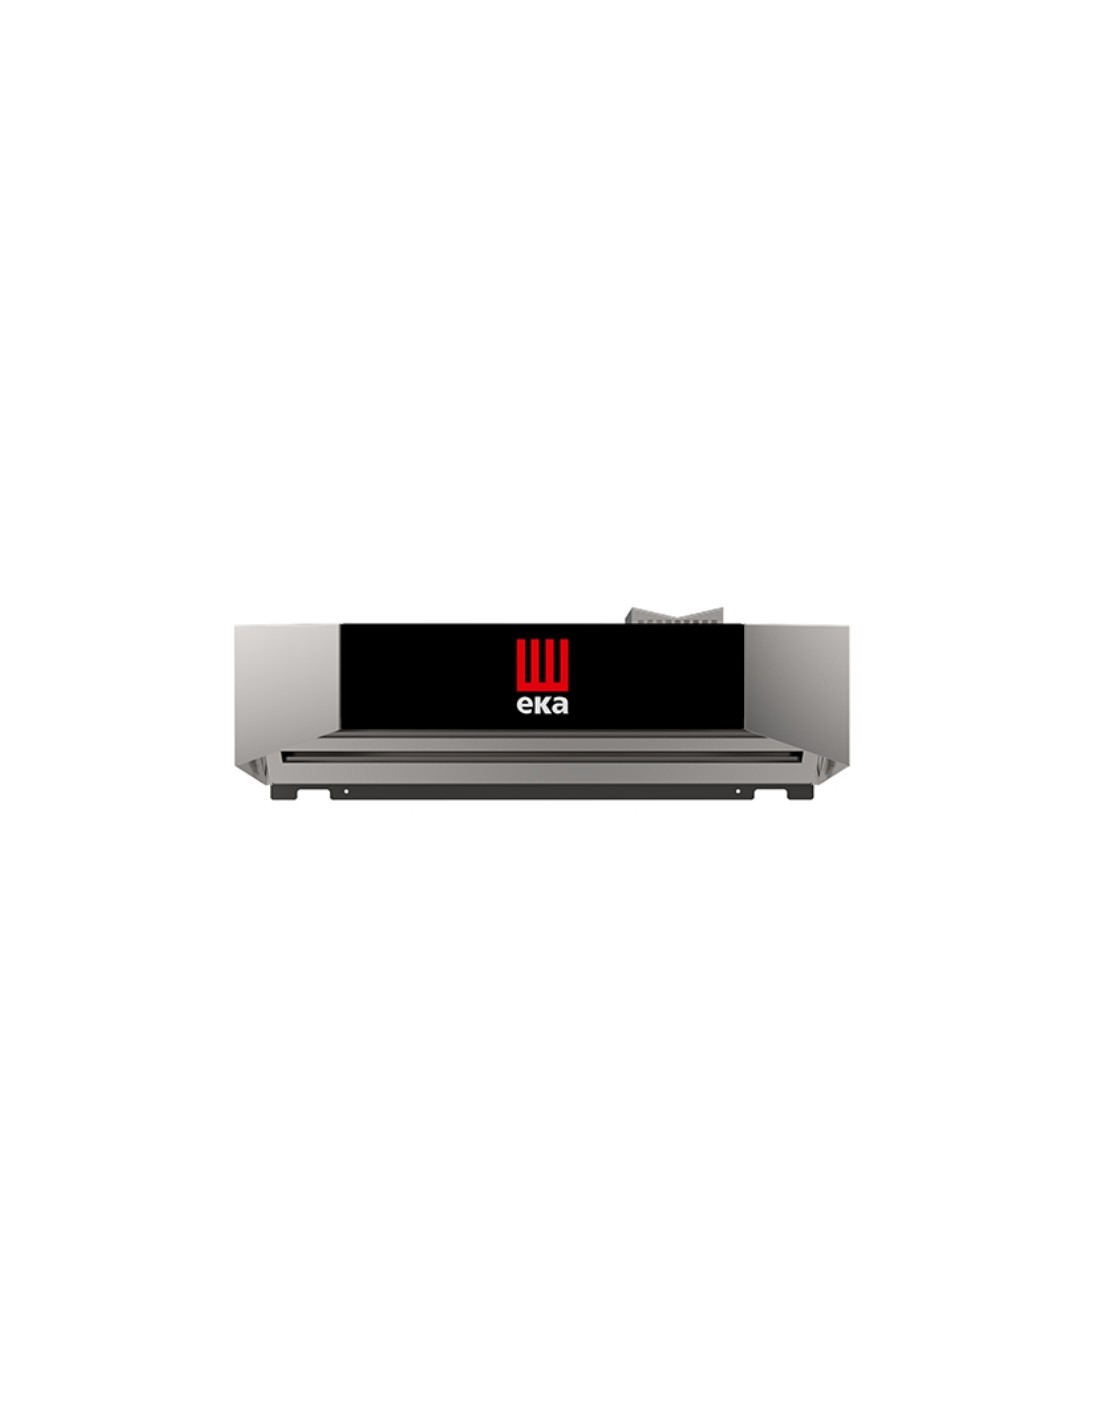 Campana eléctrica - Aspiración - Condensación - Para hornos 4 bandejas S - Controlada por el horno - Dimensiones 85 x 104,5 x 30